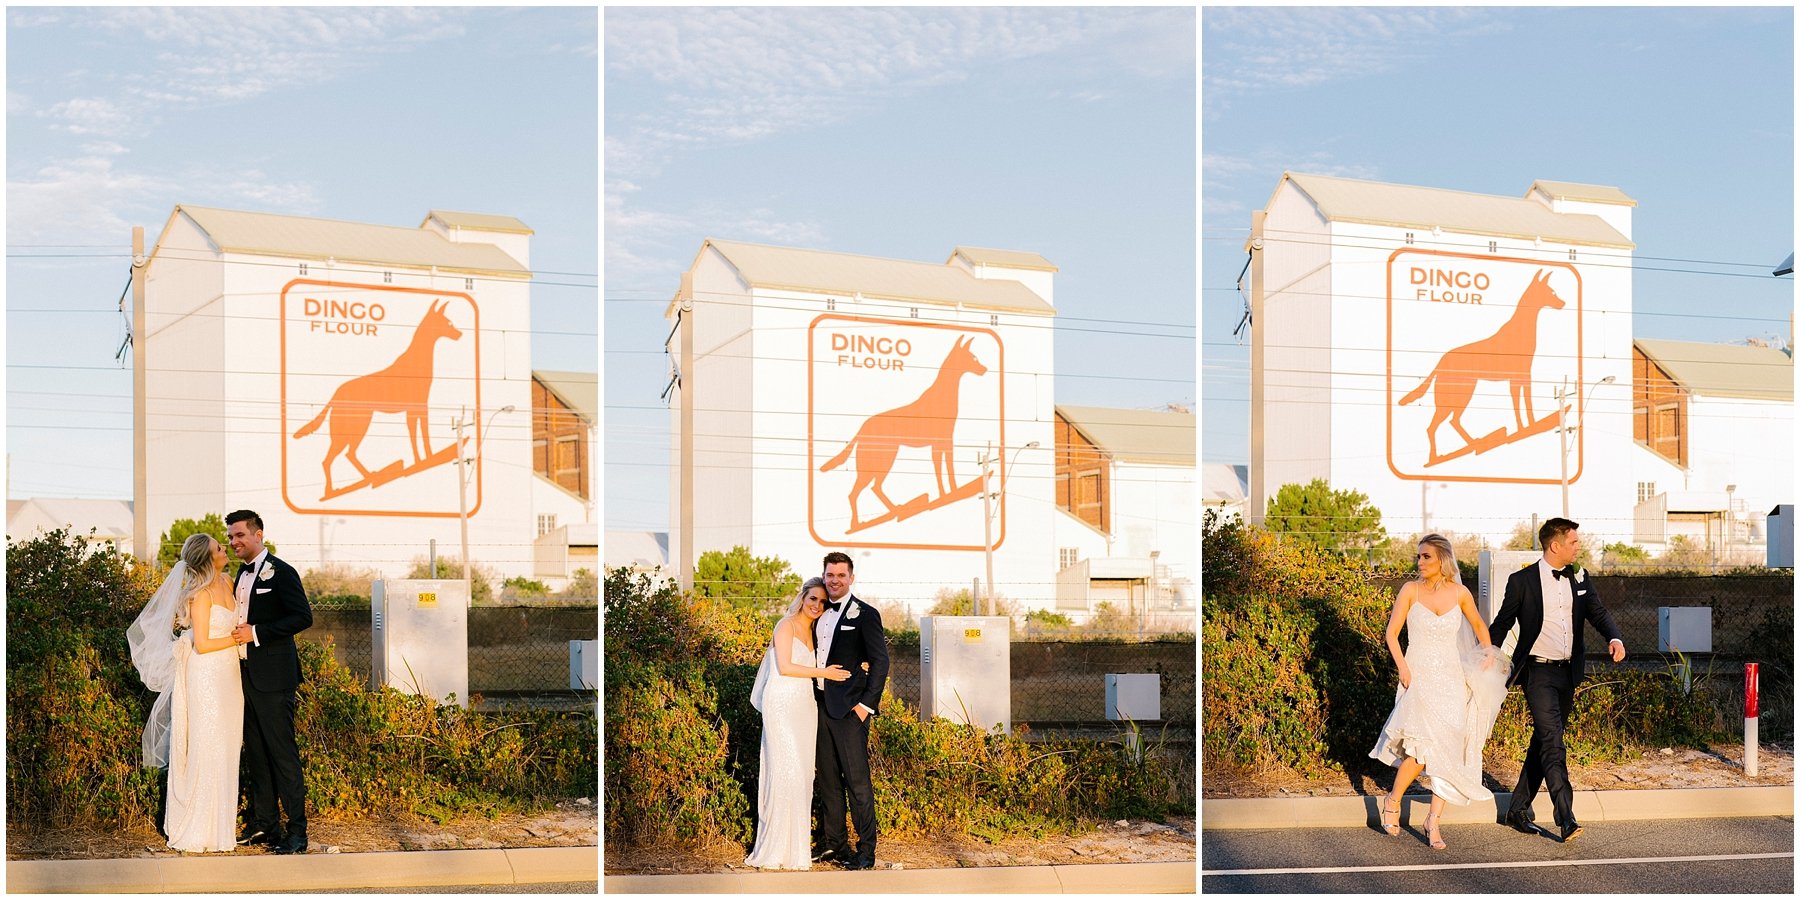 Wedding Photos at Dingo Flour Factory